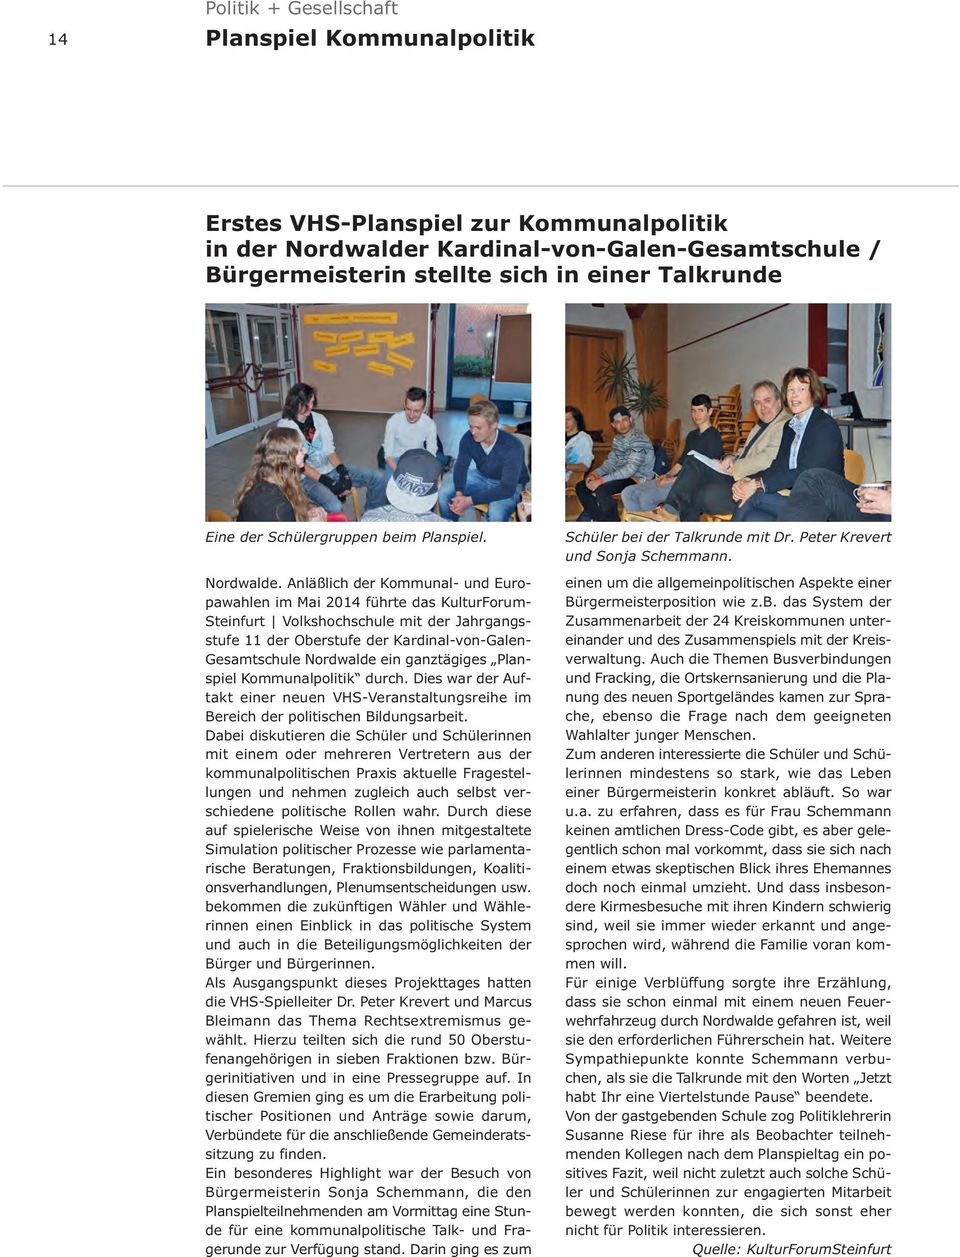 Anläßlich der Kommunal- und Europawahlen im Mai 2014 führte das KulturForum- Steinfurt Volkshochschule mit der Jahrgangsstufe 11 der Oberstufe der Kardinal-von-Galen- Gesamtschule Nordwalde ein